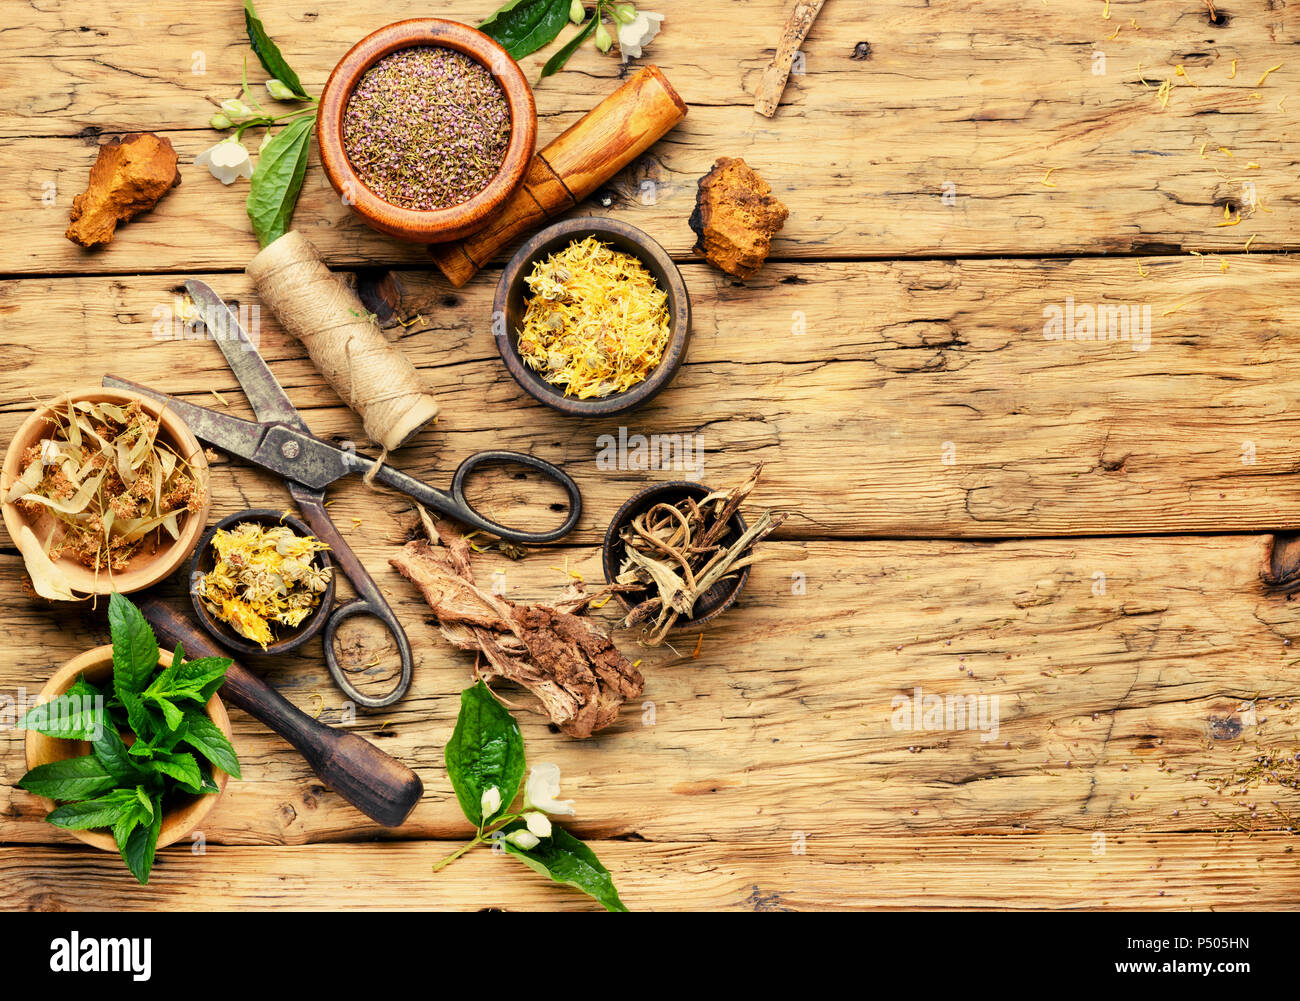 La medicina de hierbas naturales, hierbas medicinales y medicamentos herbales root.hierbas naturales medicina Foto de stock